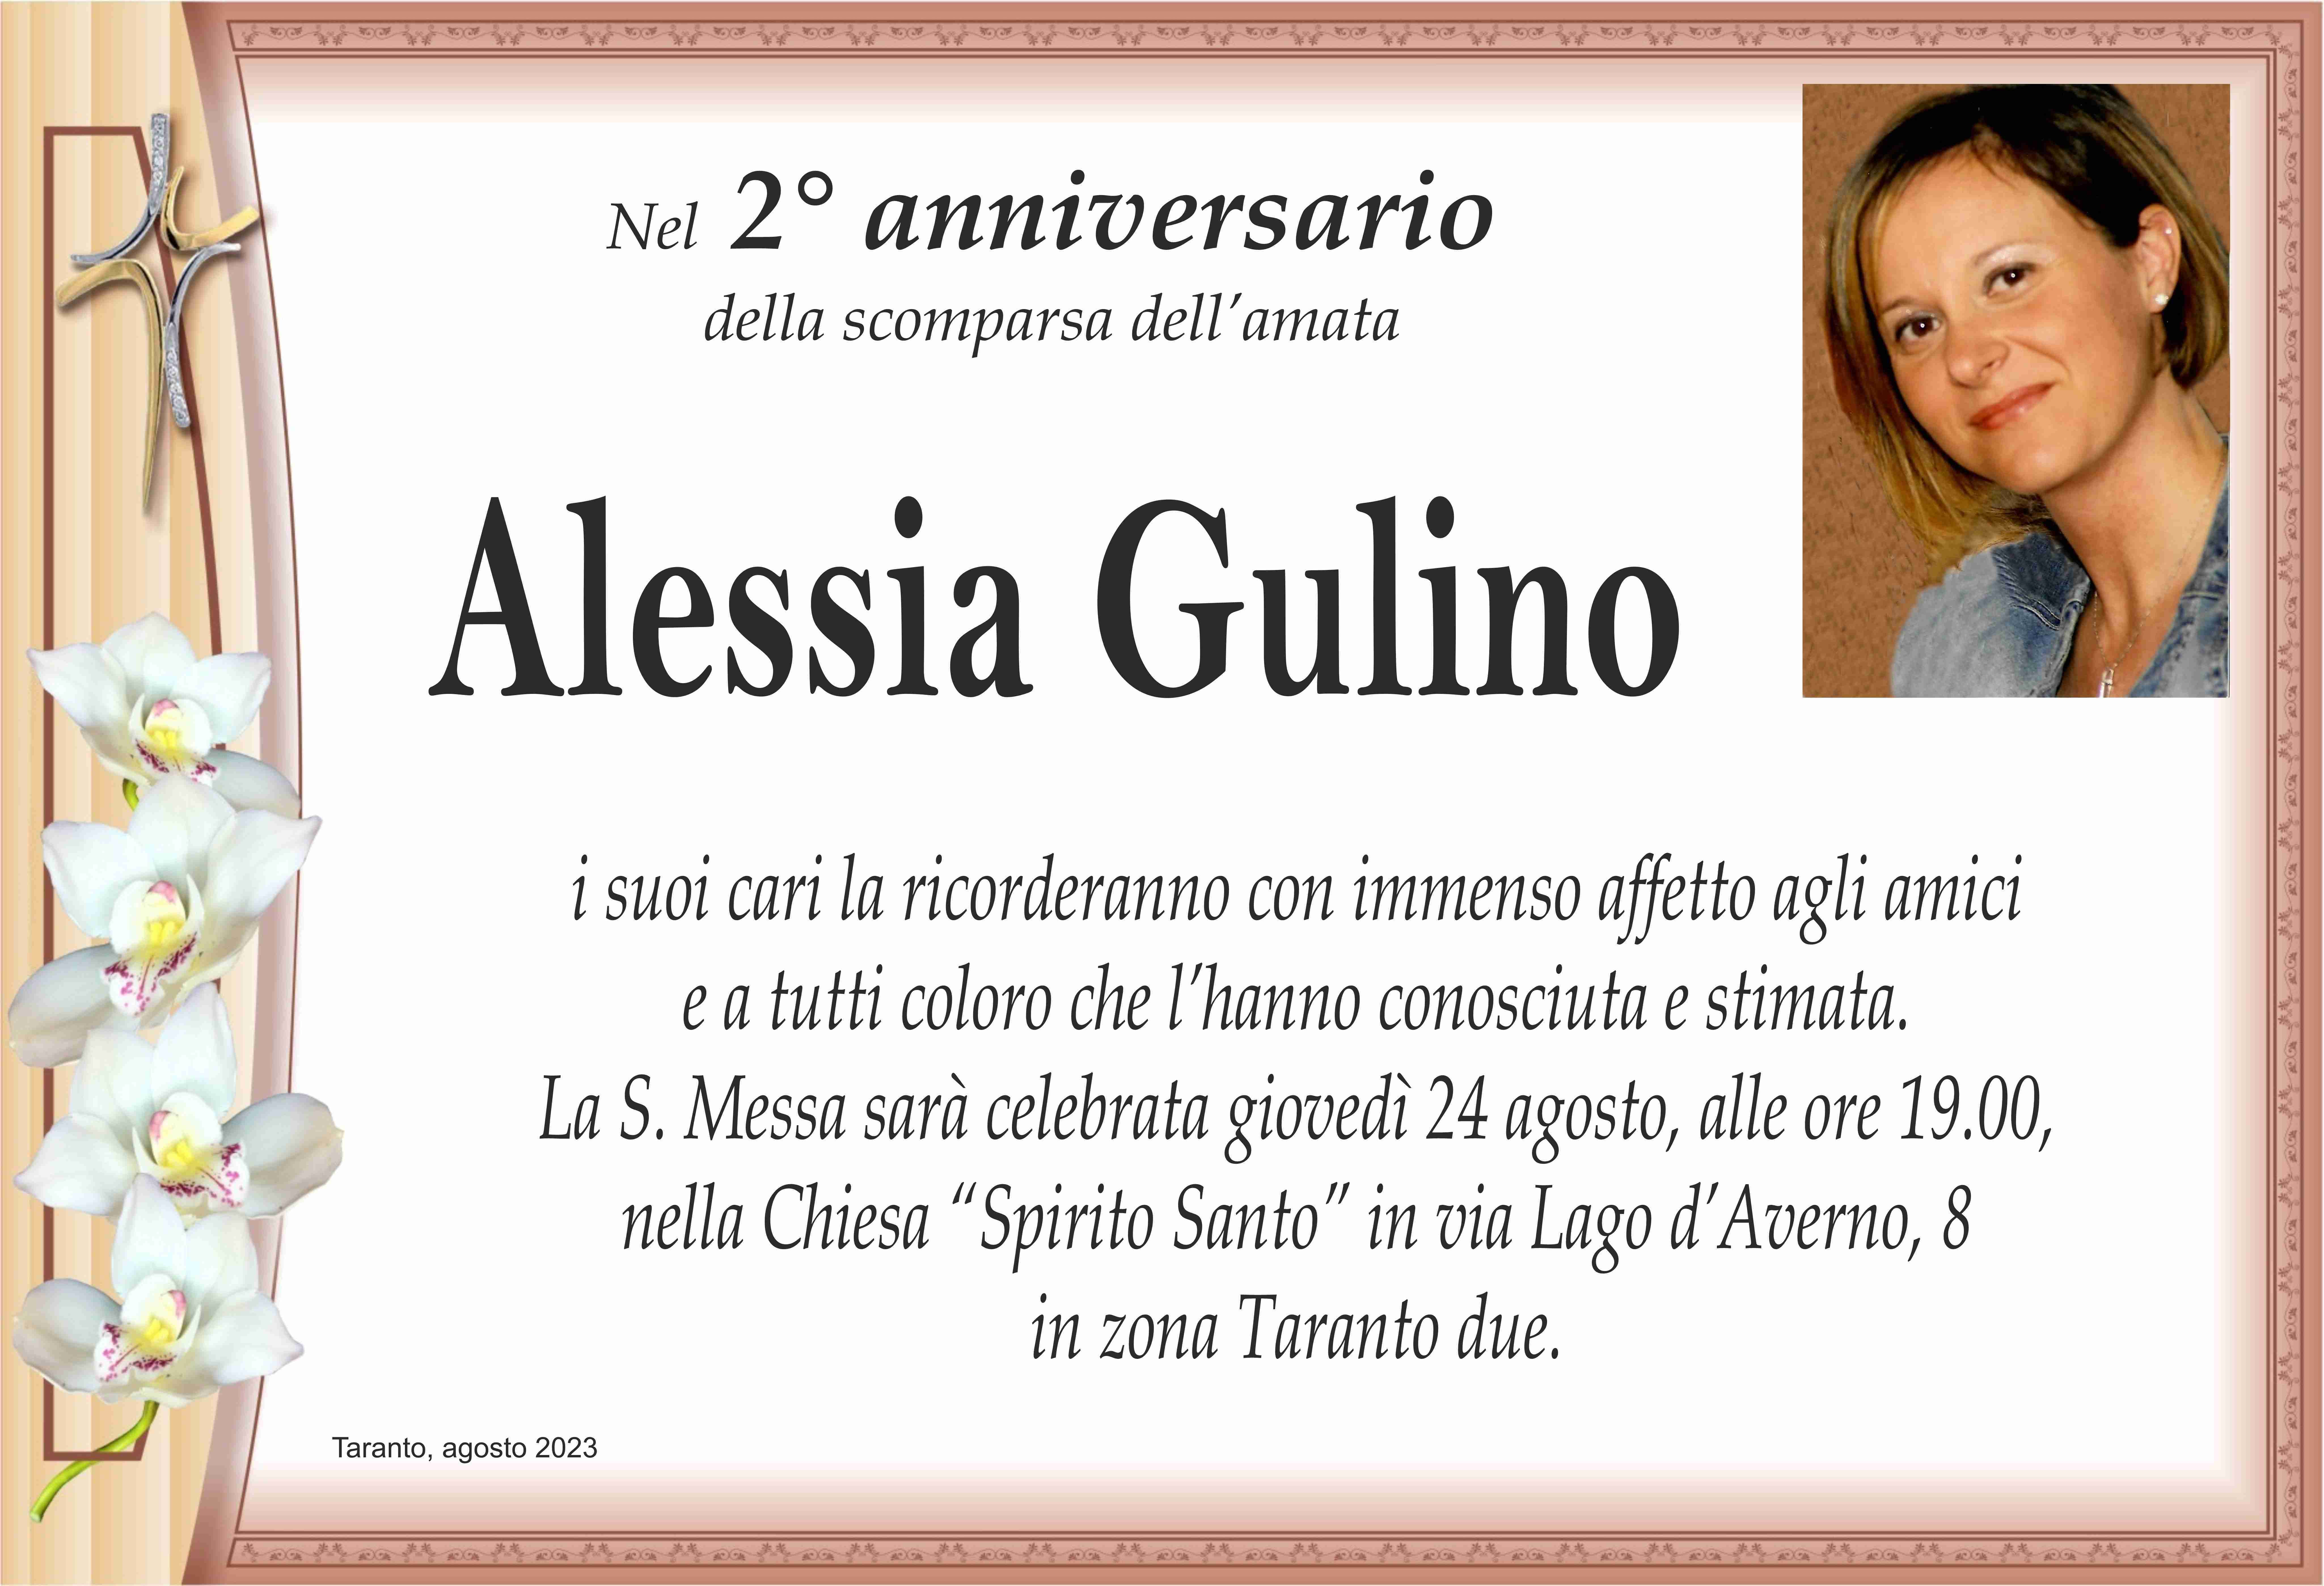 Alessia Gulino